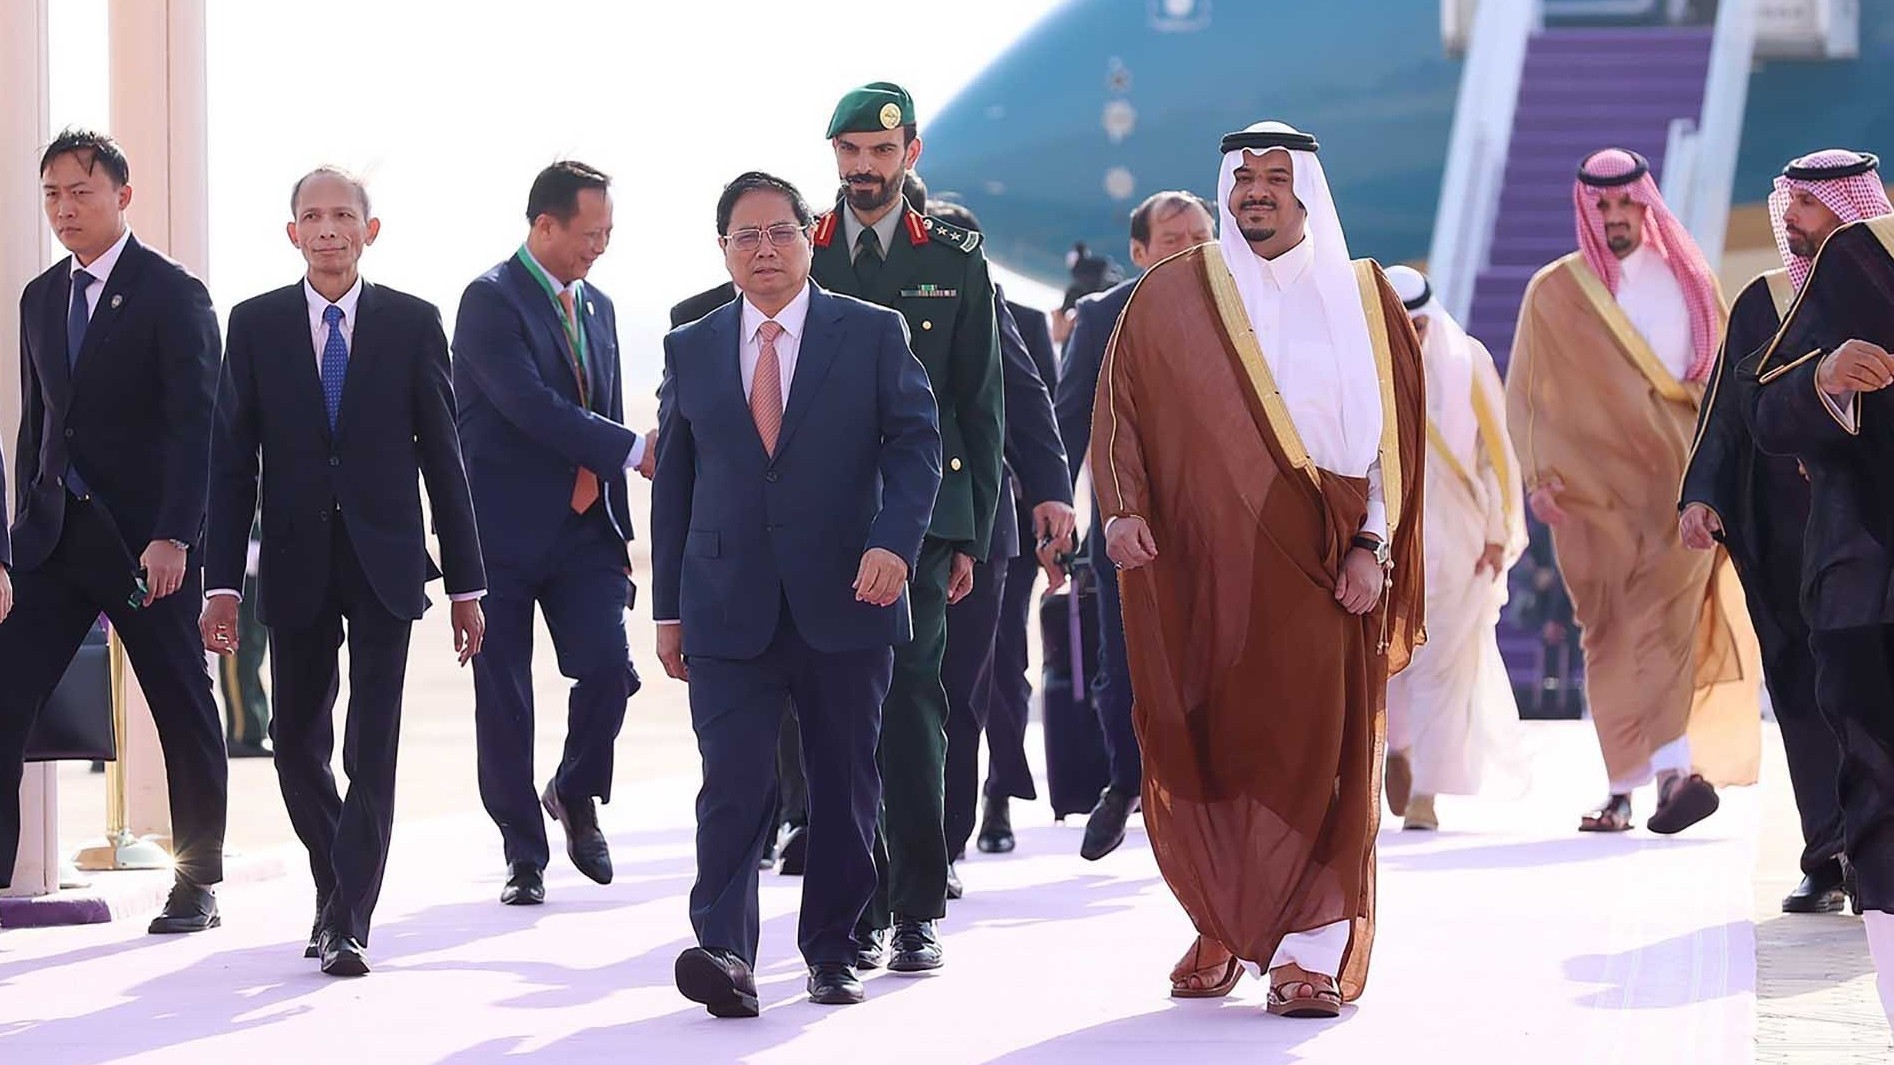 Thủ tướng Phạm Minh Chính tới Riyadh, bắt đầu chuyến công tác dự Hội nghị cấp cao ASEAN-GCC và thăm Saudi Arabia